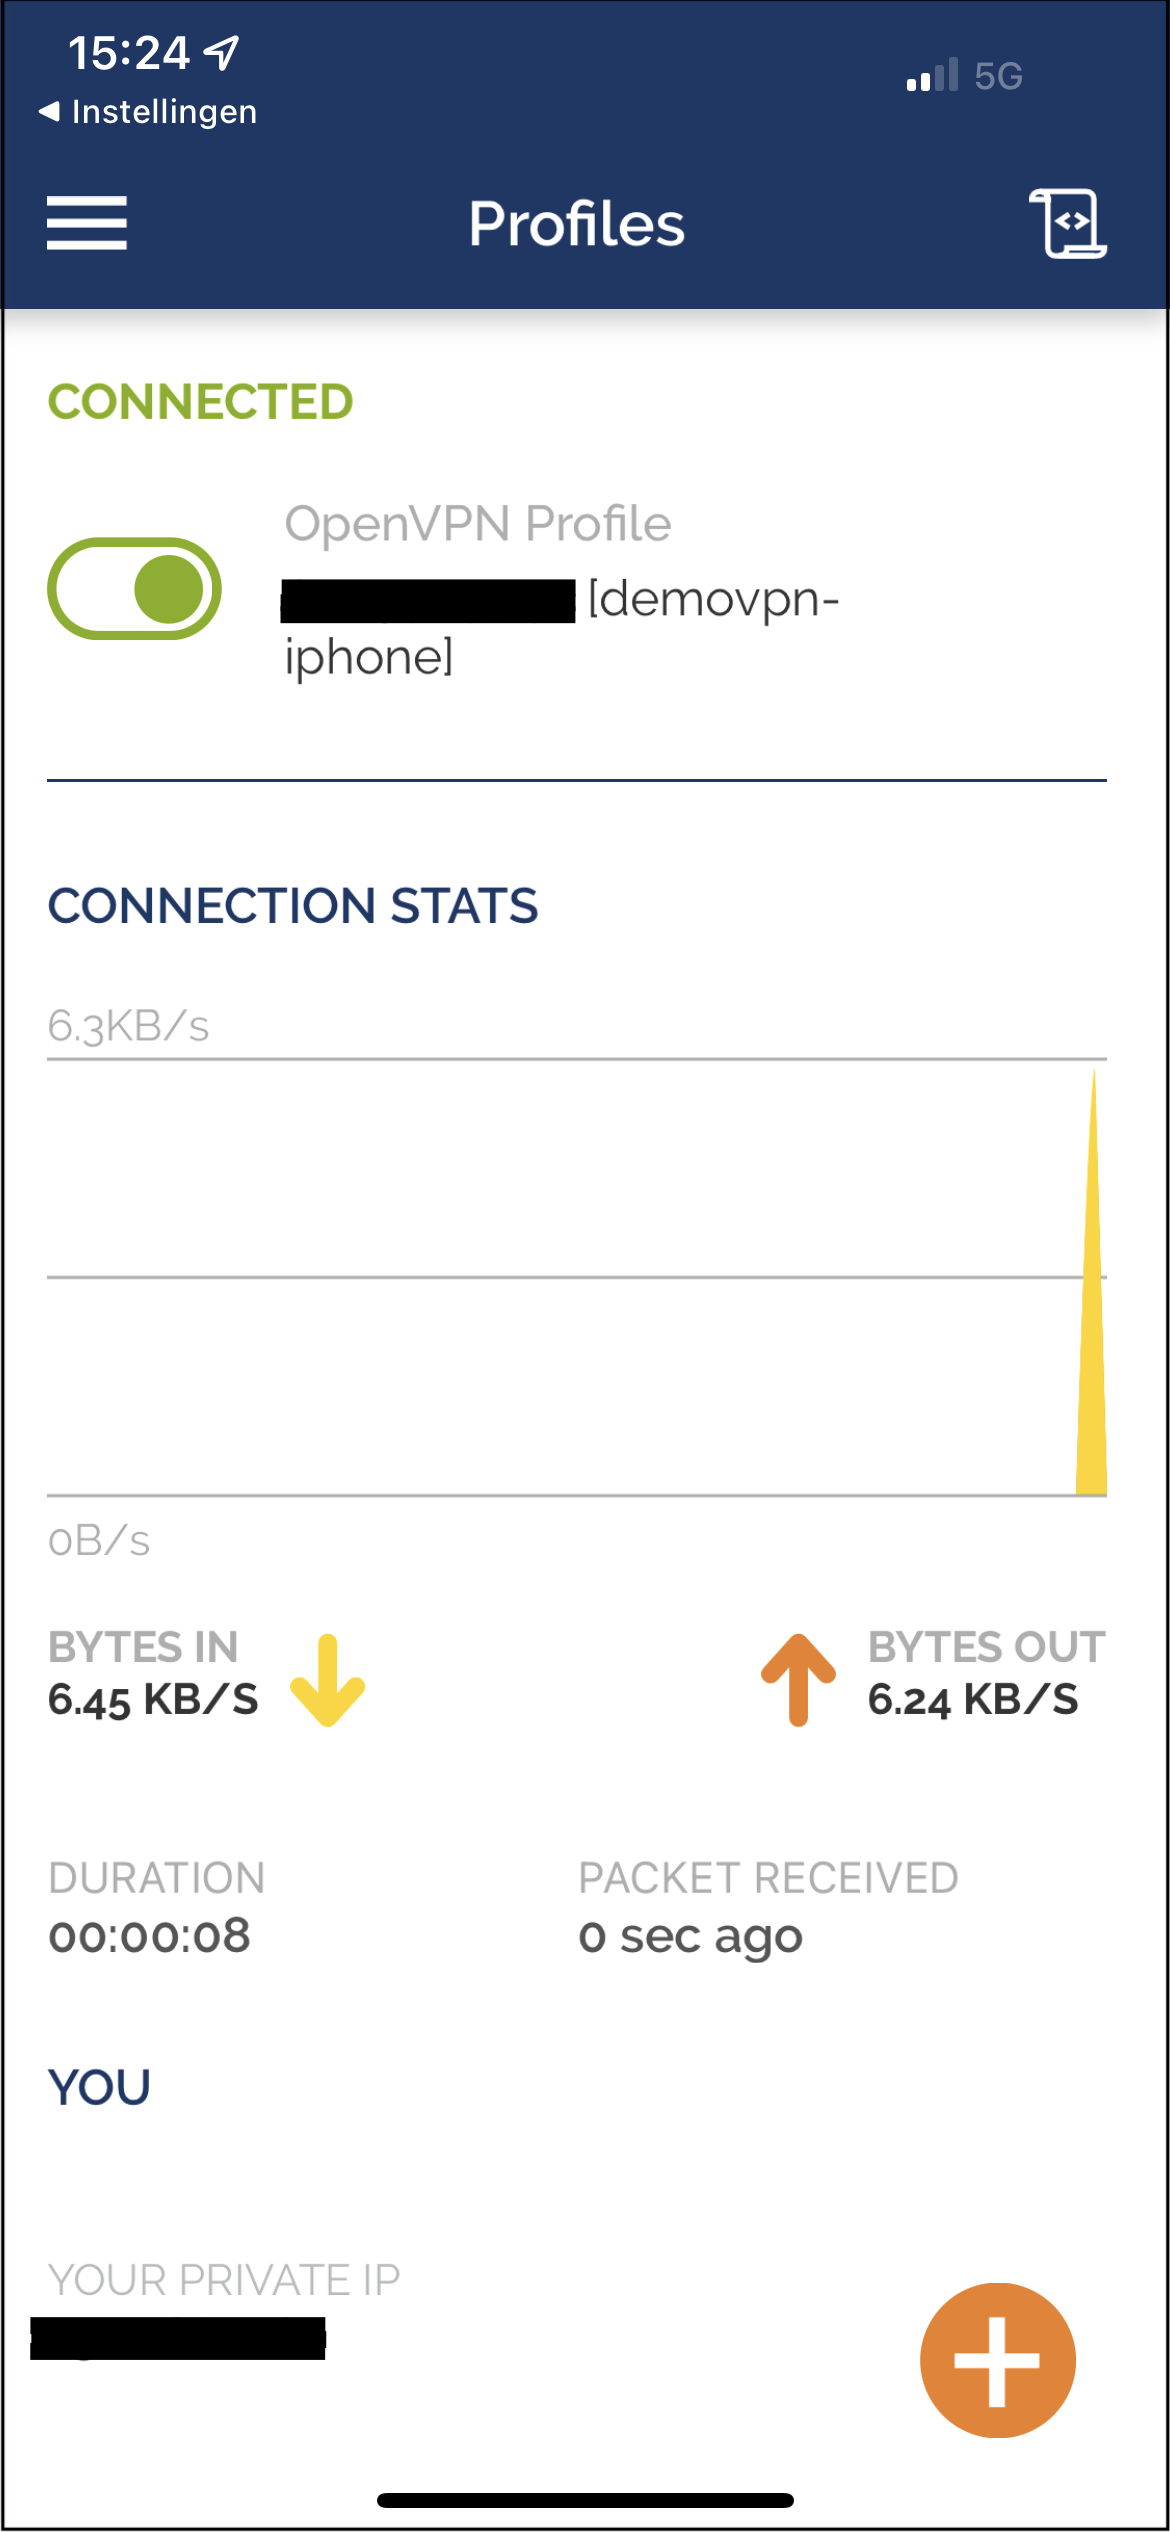 VPN has been connected